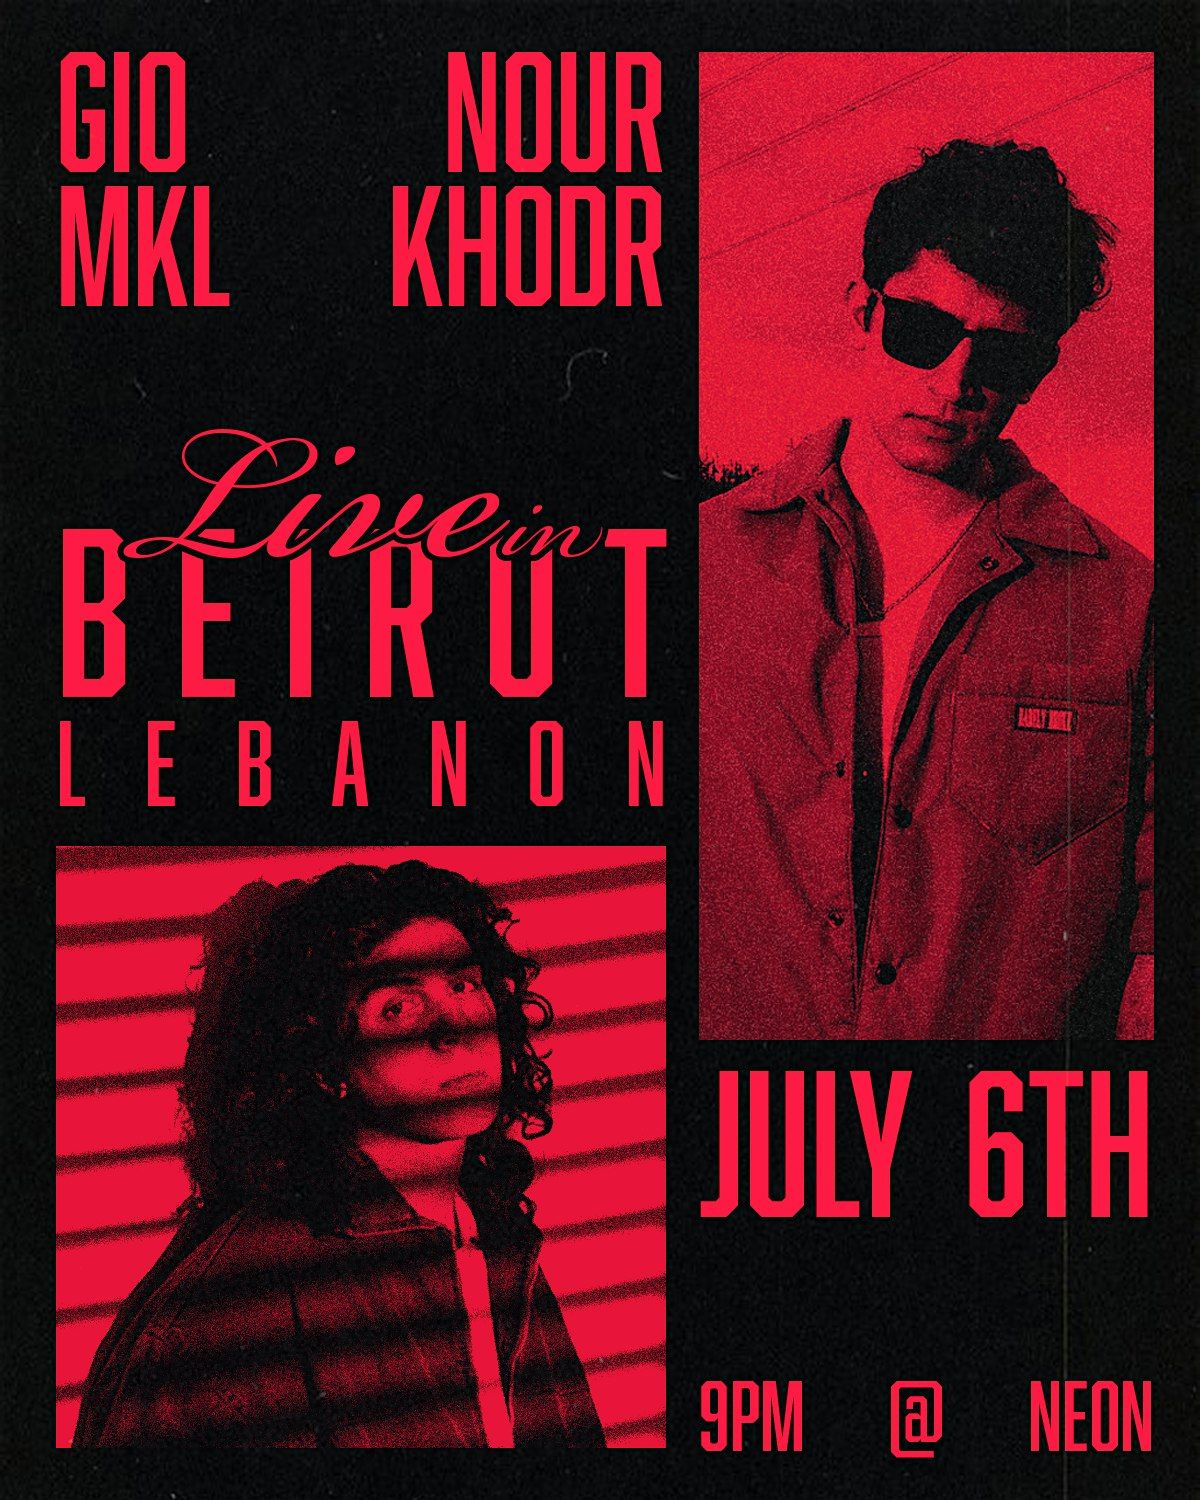 Nour Khodr X Gio Mkl Concert Beirut Lebanon July 6